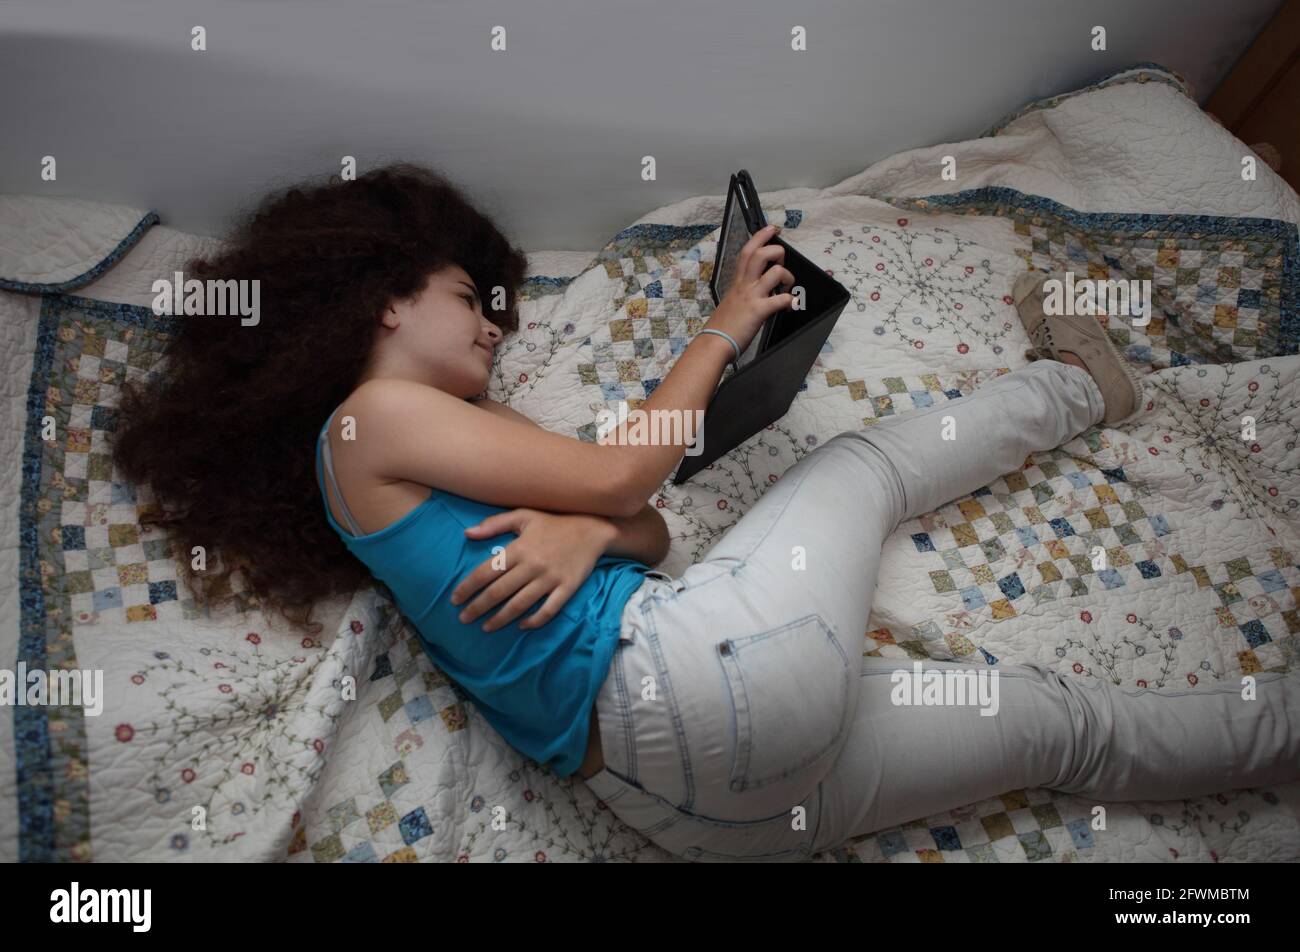 Das wunderschöne dreizehnjährige lächelnde Mädchen, Teenager mit lockigem Haar, träumt davon, auf ihrem Bett zu liegen, auf Kleidung und Schuhen, sie schaut auf ihr Tablet. Stockfoto